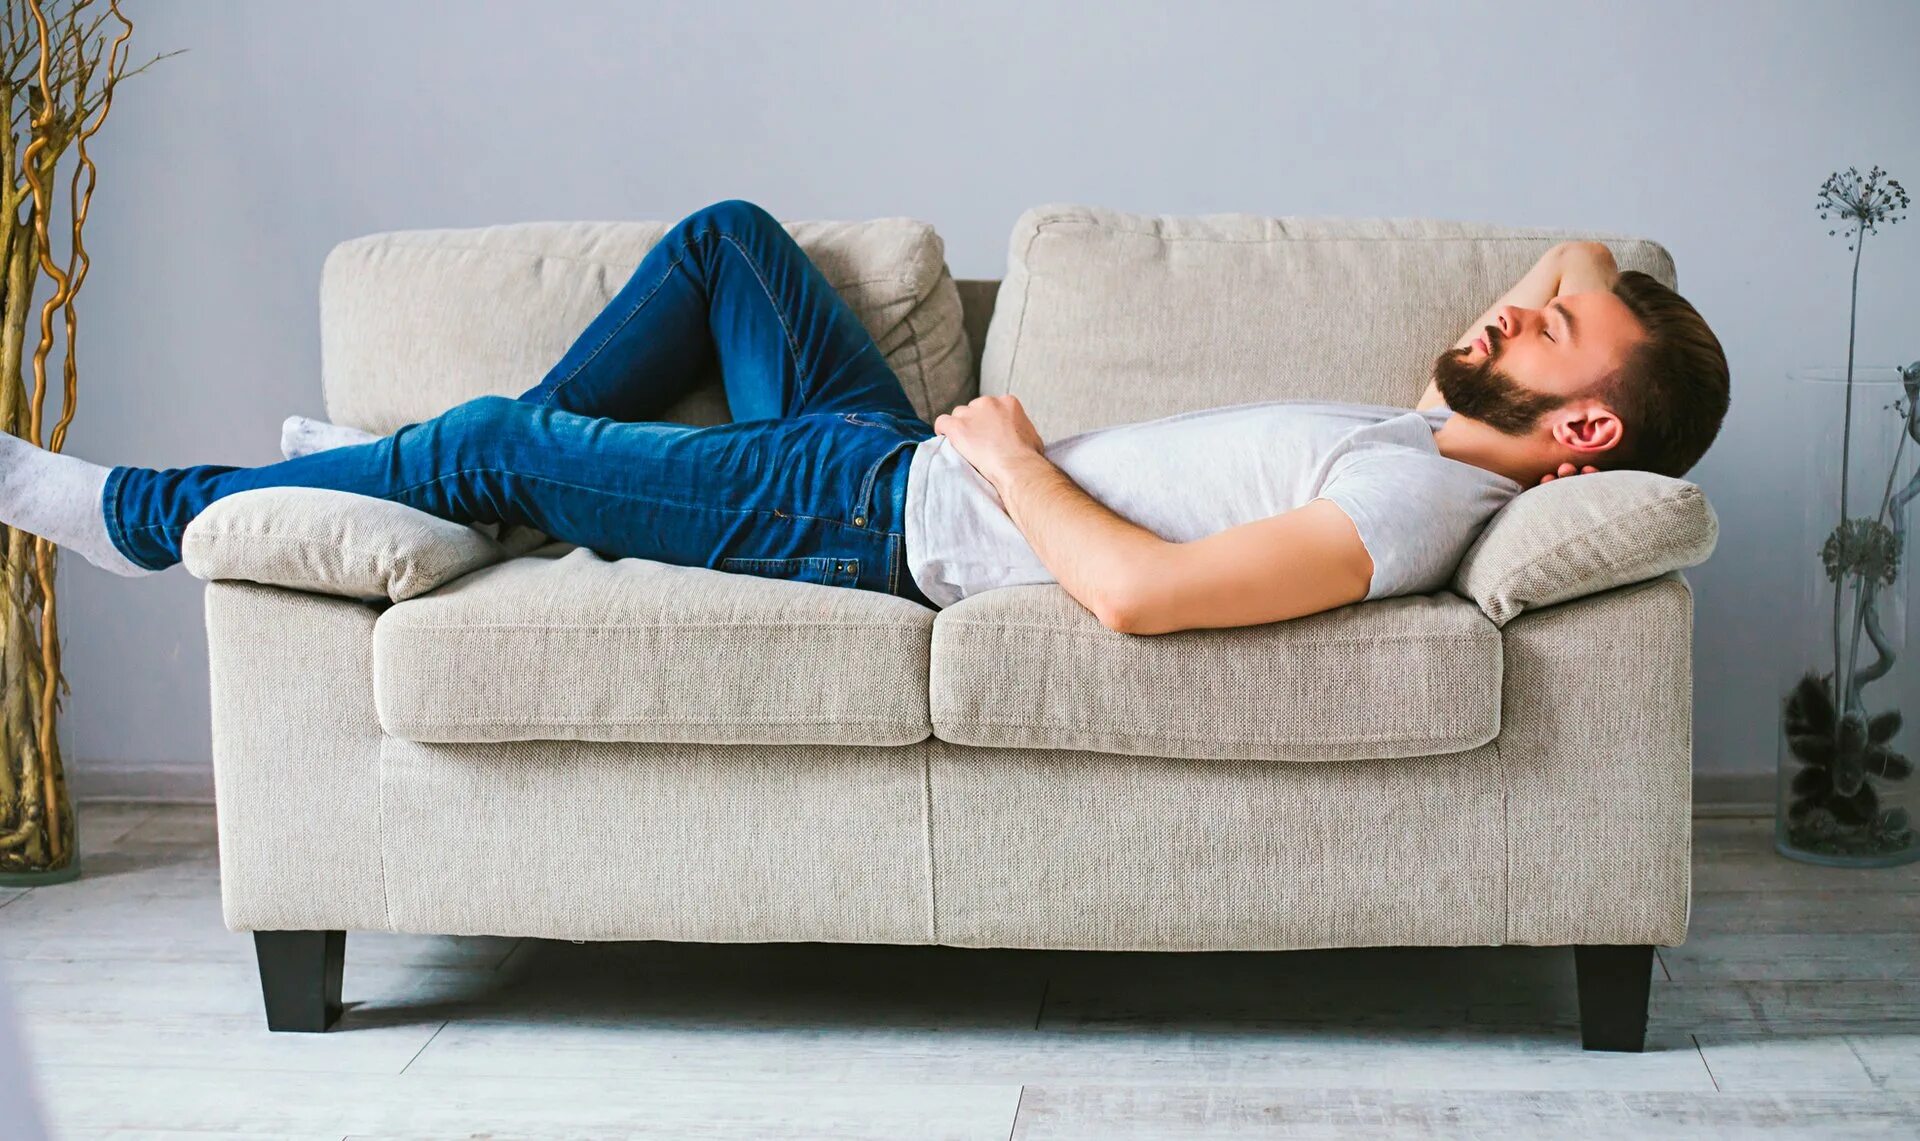 Фото лежащего мужчины. Человек лежит на диване. Мужчина на диване. Парень лежит на диване. Человек отдыхает на диване.